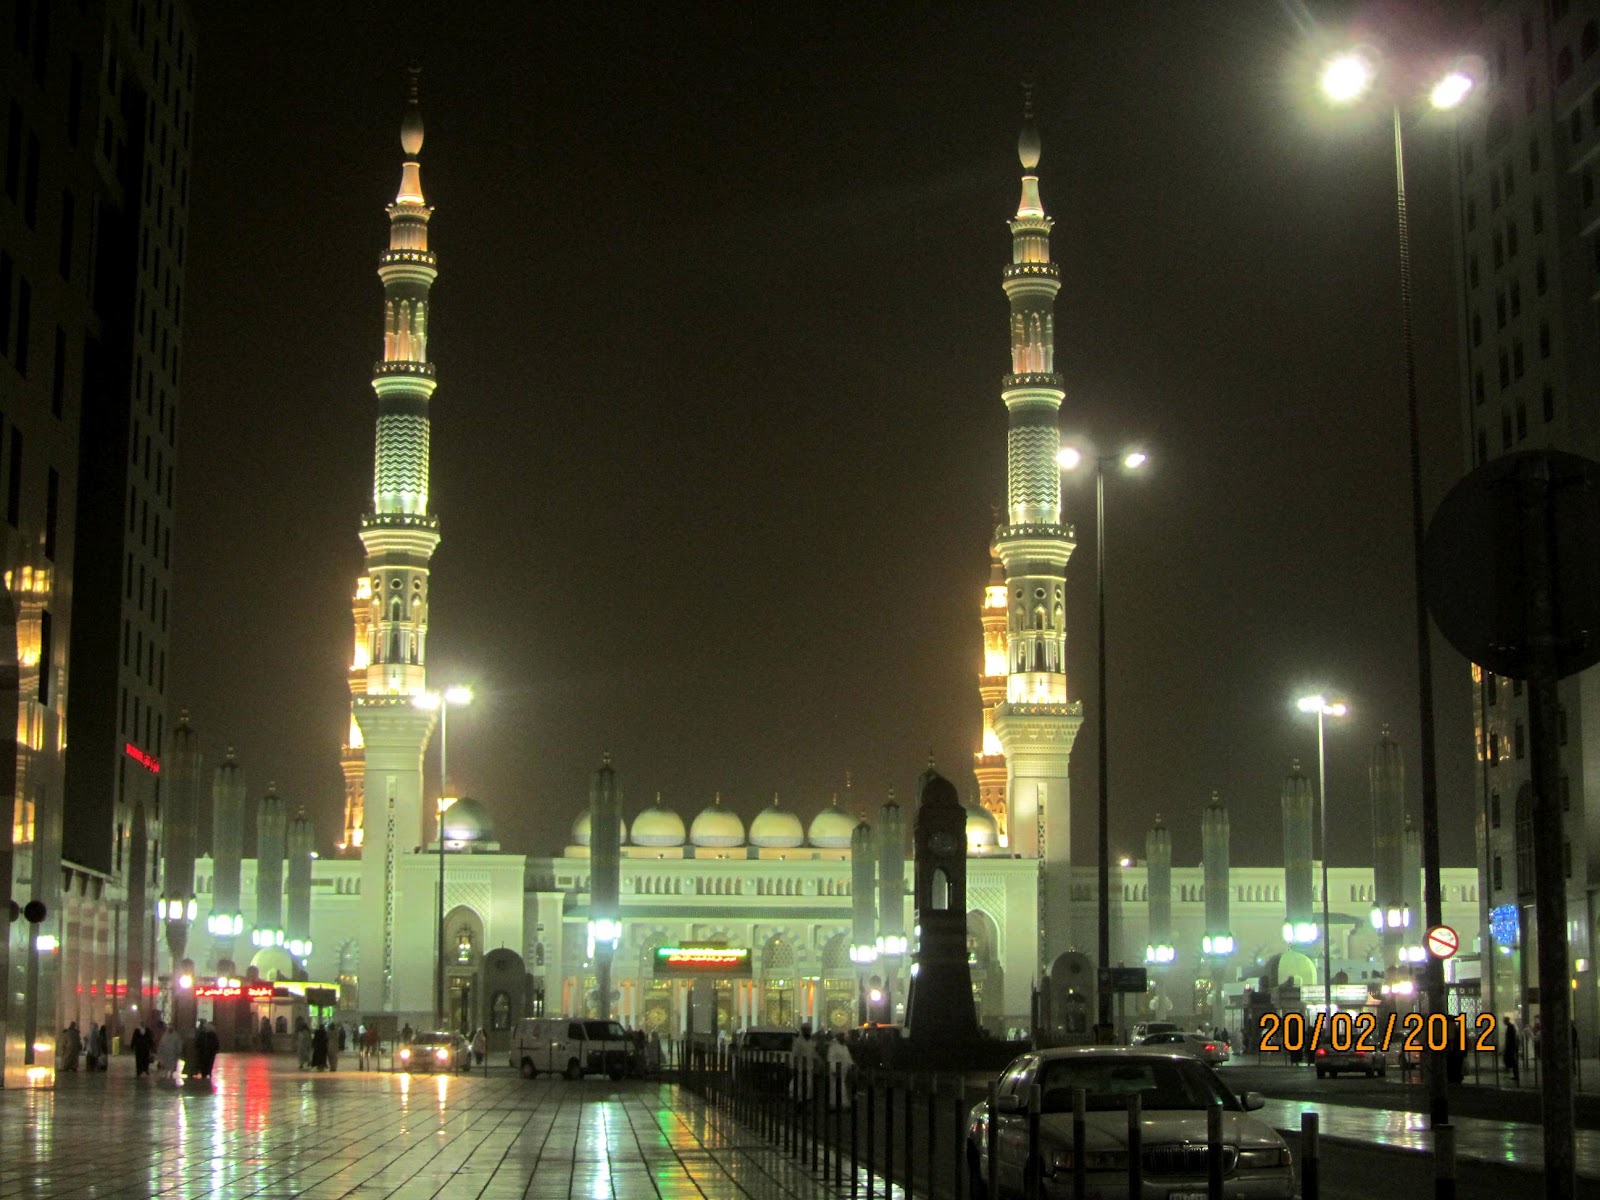 -: Umrah ziarah 2012 : Masjid Nabawi, Madinah.